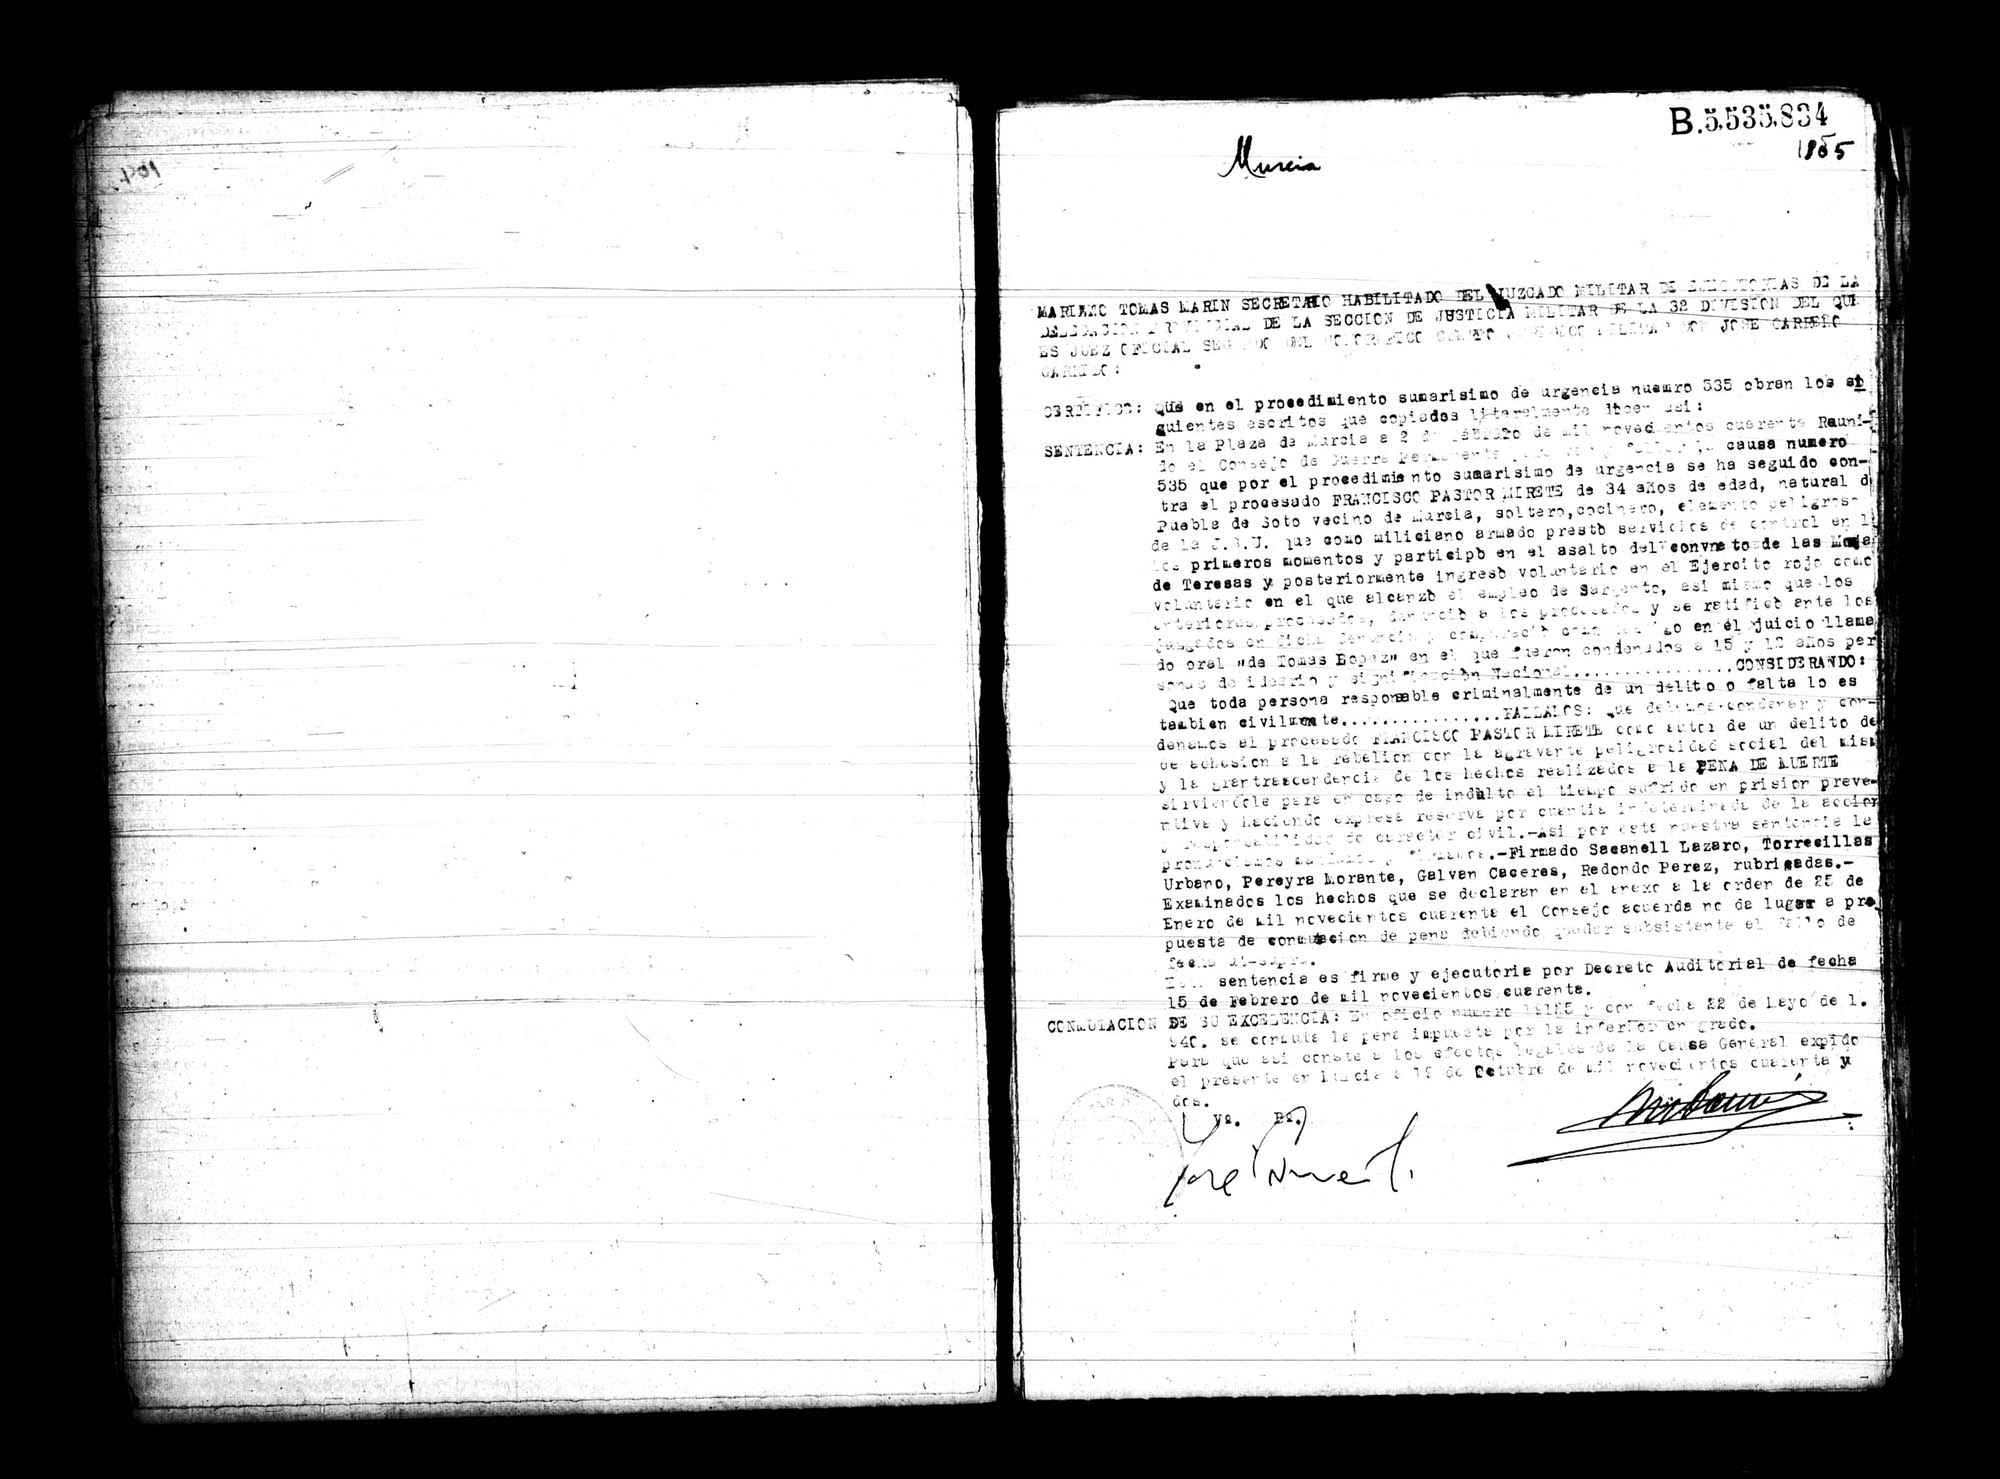 Certificado de la sentencia pronunciada contra Francisco Pastor Mirete, causa 535, el 2 de febrero de 1940 en Murcia.